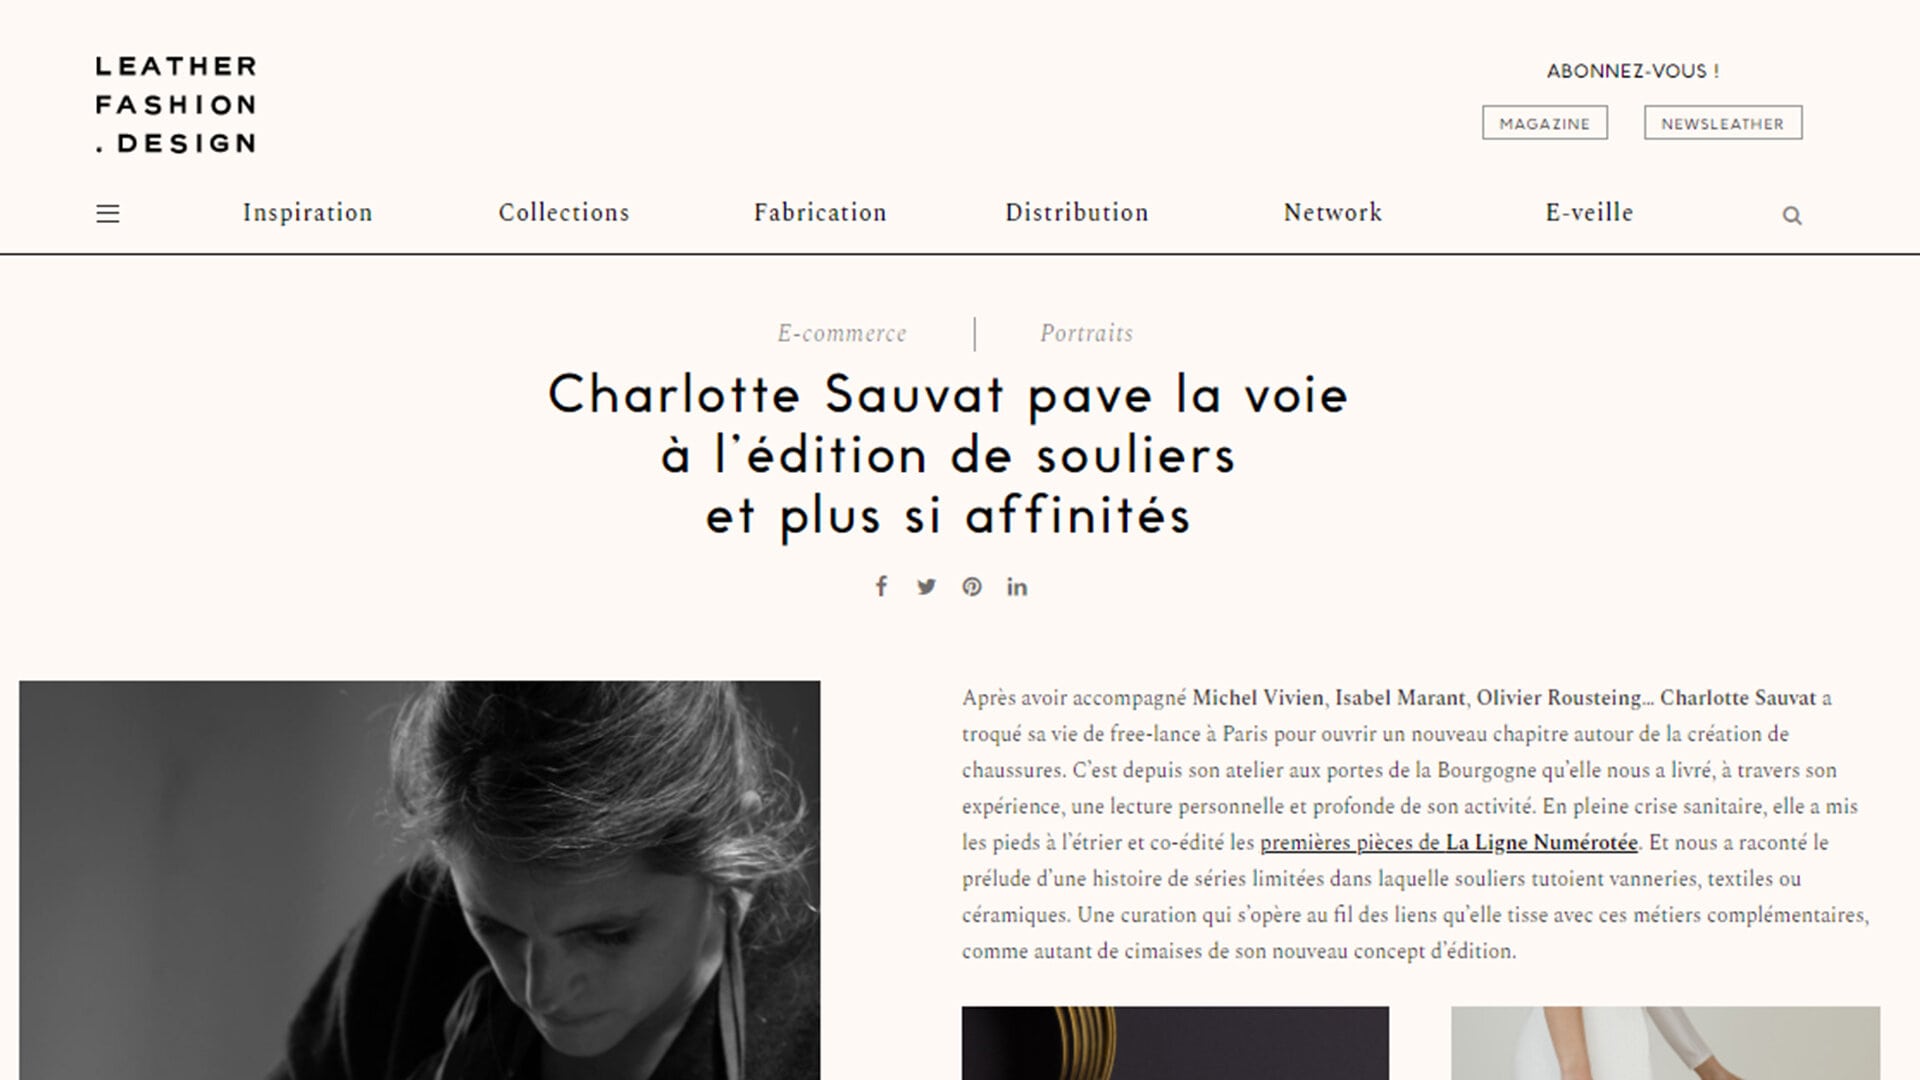 Charlotte Sauvat pave la voie à l’édition de souliers et plus si affinités"  Leather Fashion Design, 22 janvier 2021 - Juliette Sebille